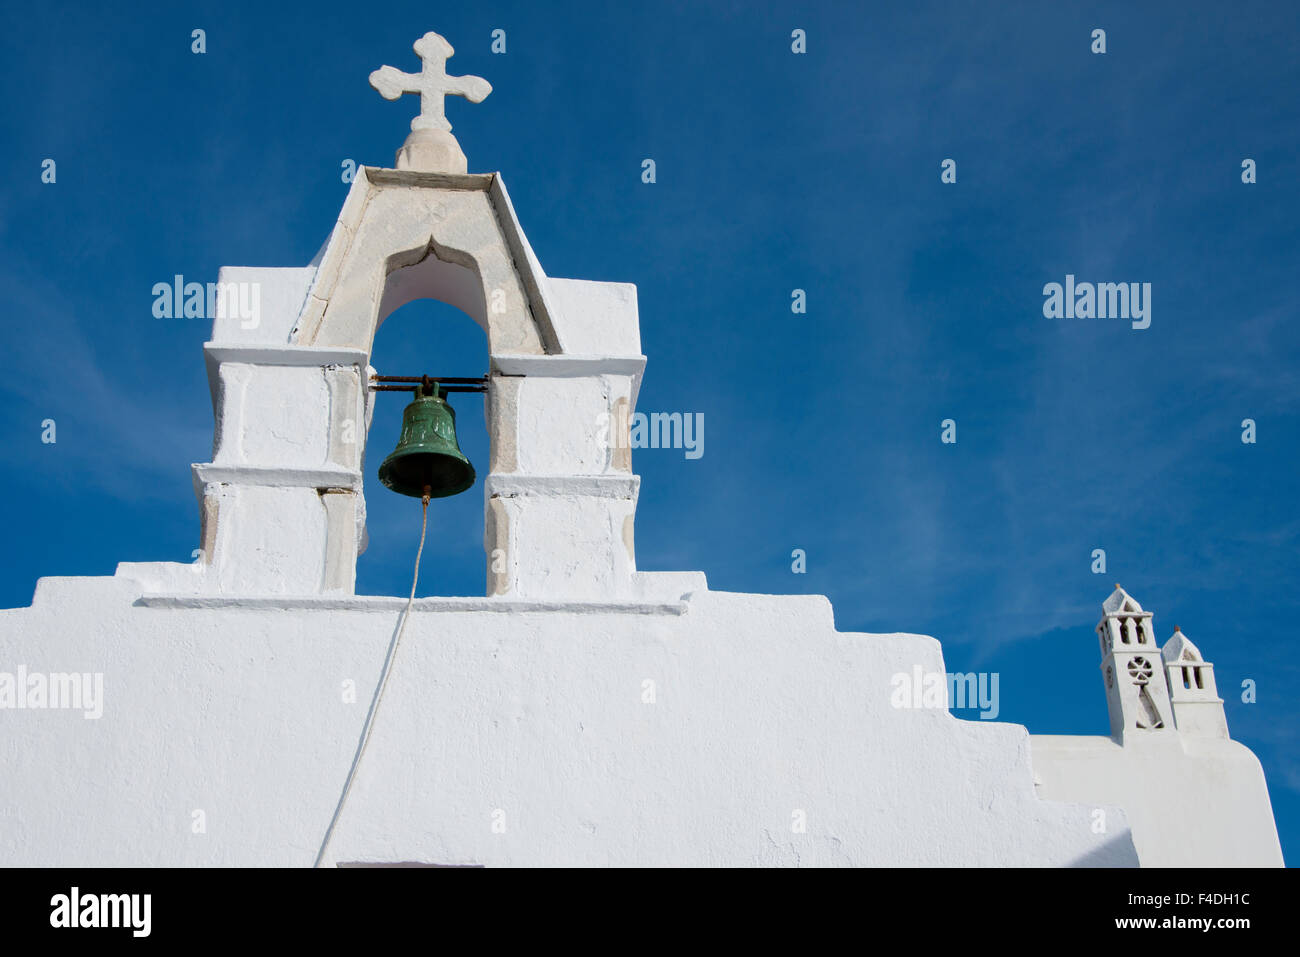 Grèce, les Cyclades, Mykonos, Hora. Sur le toit de l'église typique blanchi à la chaux avec Bell (vers 1811) montrant la tour de l'architecture traditionnelle des Cyclades. Tailles disponibles (grand format). Banque D'Images